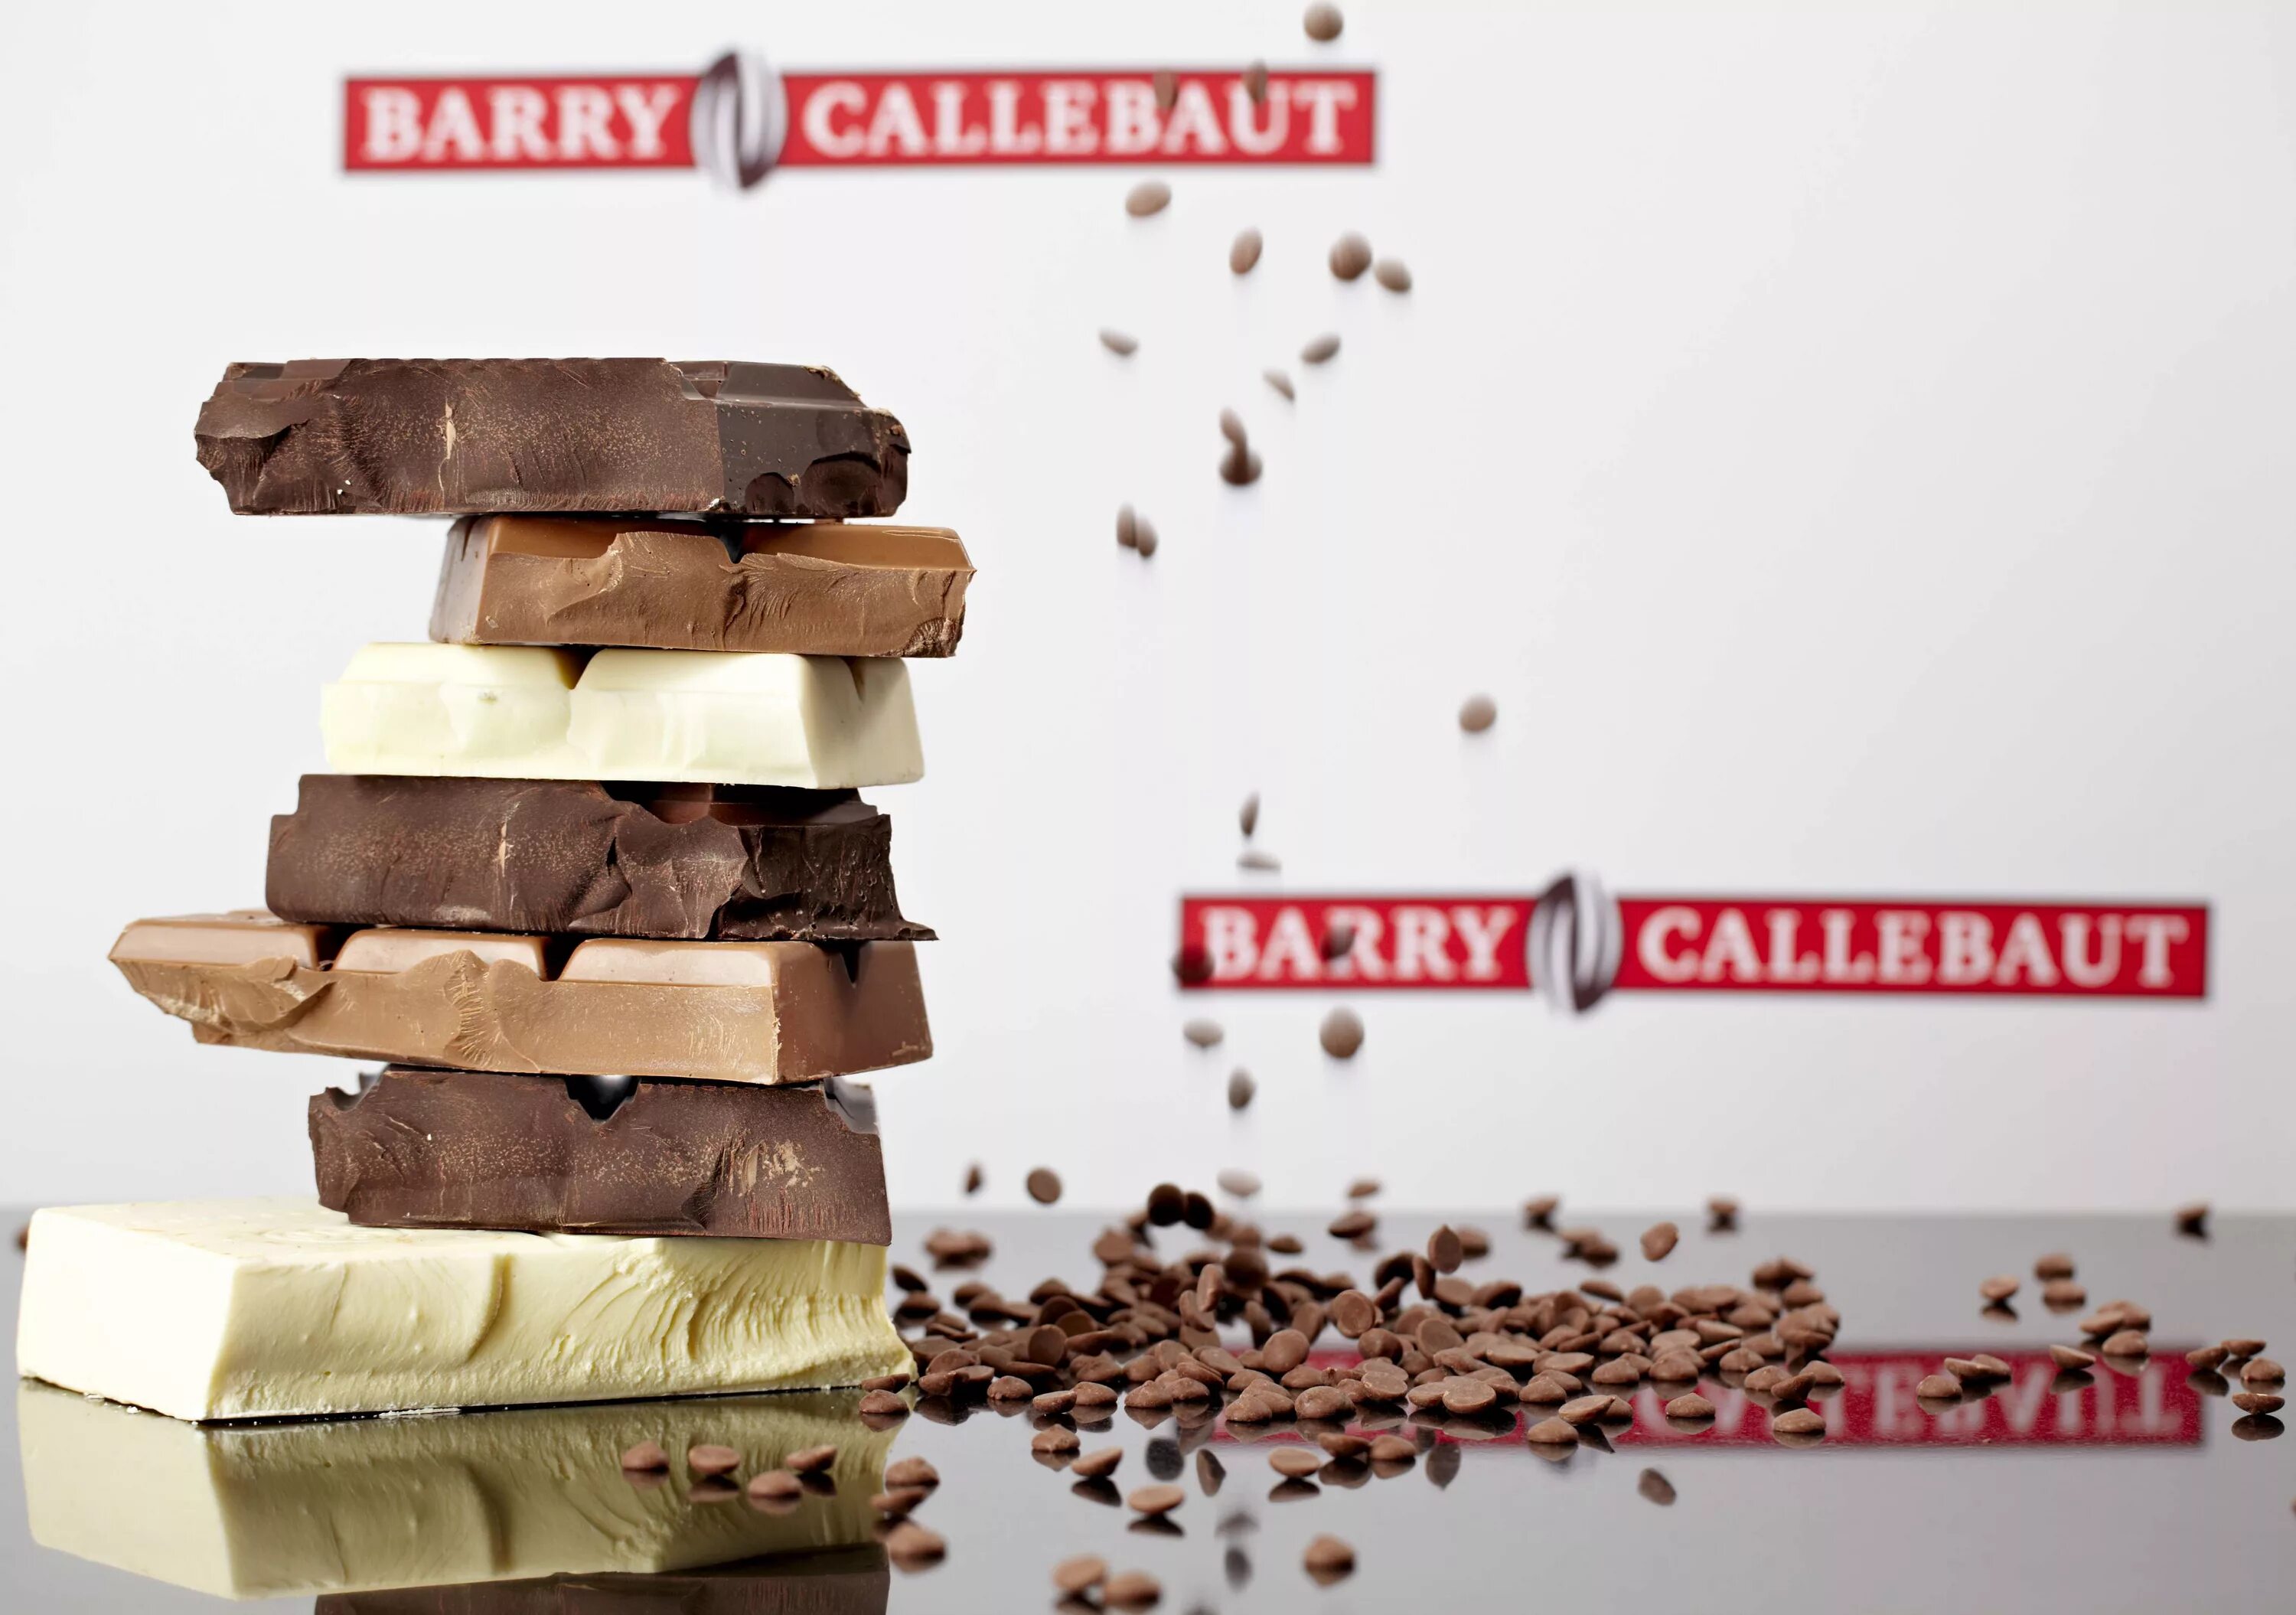 Бари шоколад. Шоколадная фабрика Барри Каллебаут. Шоколад Барри Каллебаут. Бельгийский шоколад Barry Callebaut. Барри Каллебаут шоколад Фабика.